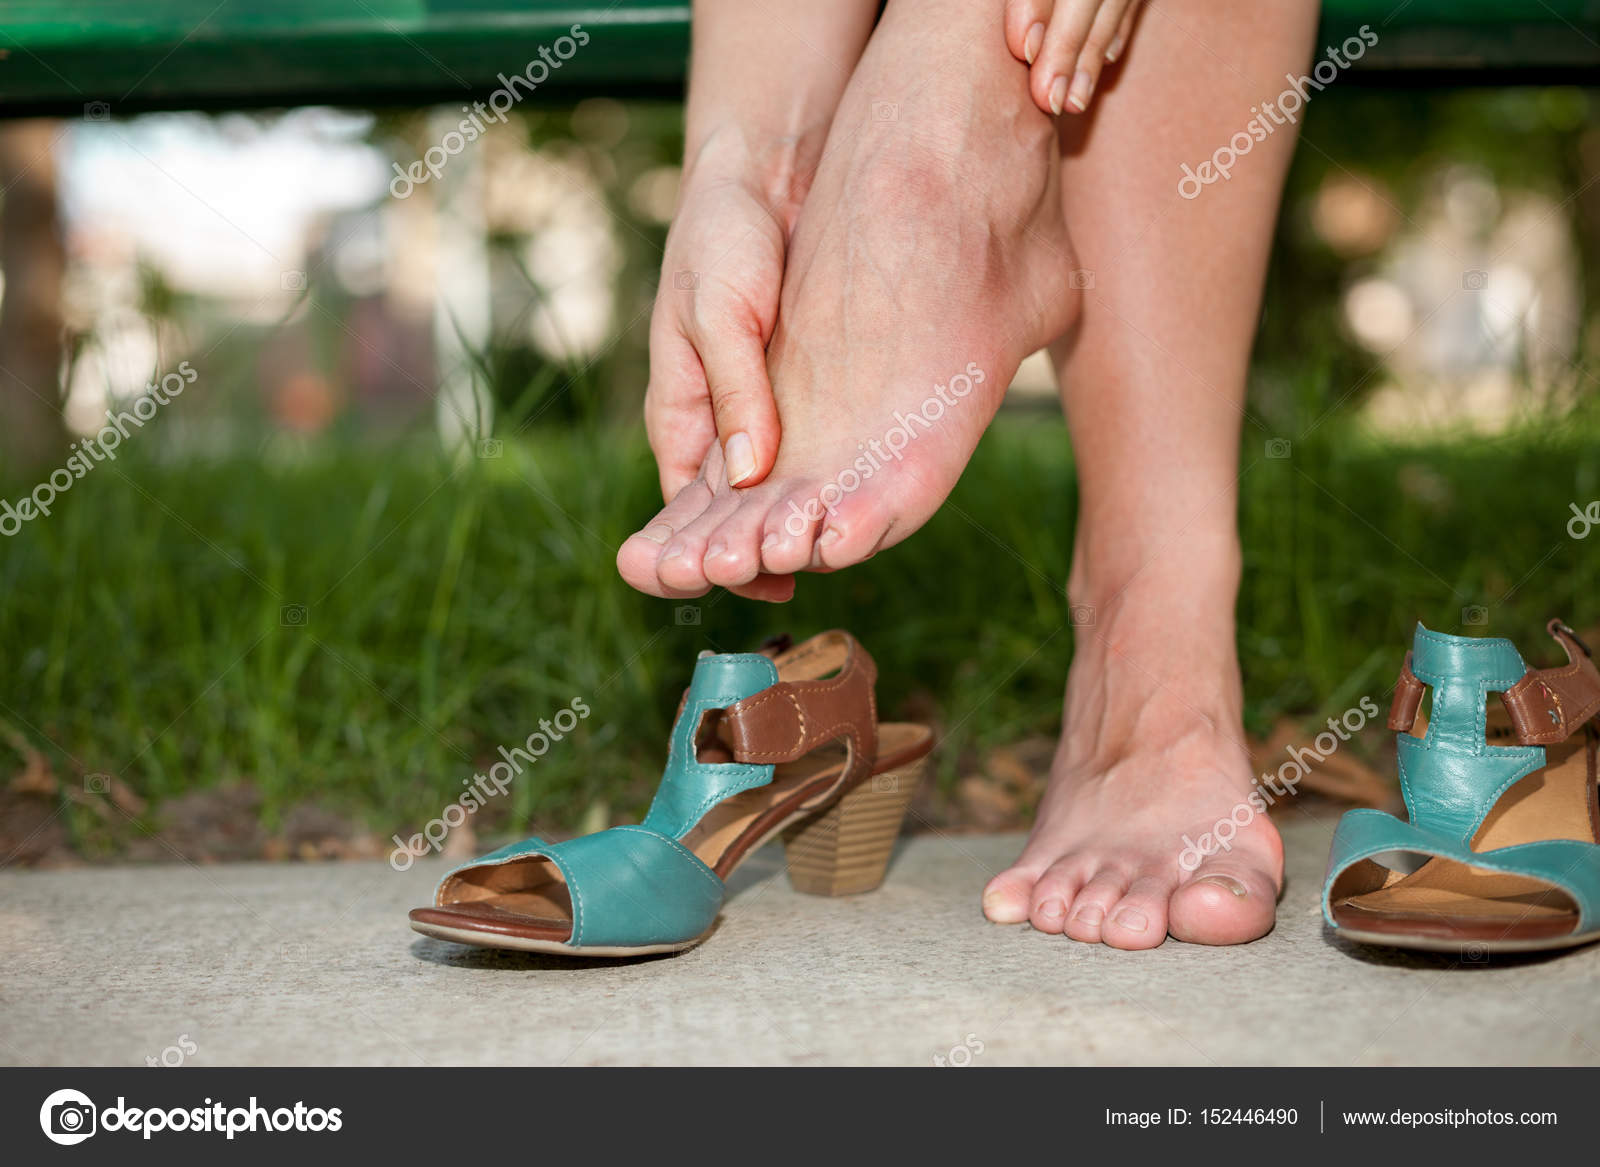 Danger feet. Женские ноги в тапочках. Босоножки для отекающих ног. Уставшие ступни. Усталые ноги.